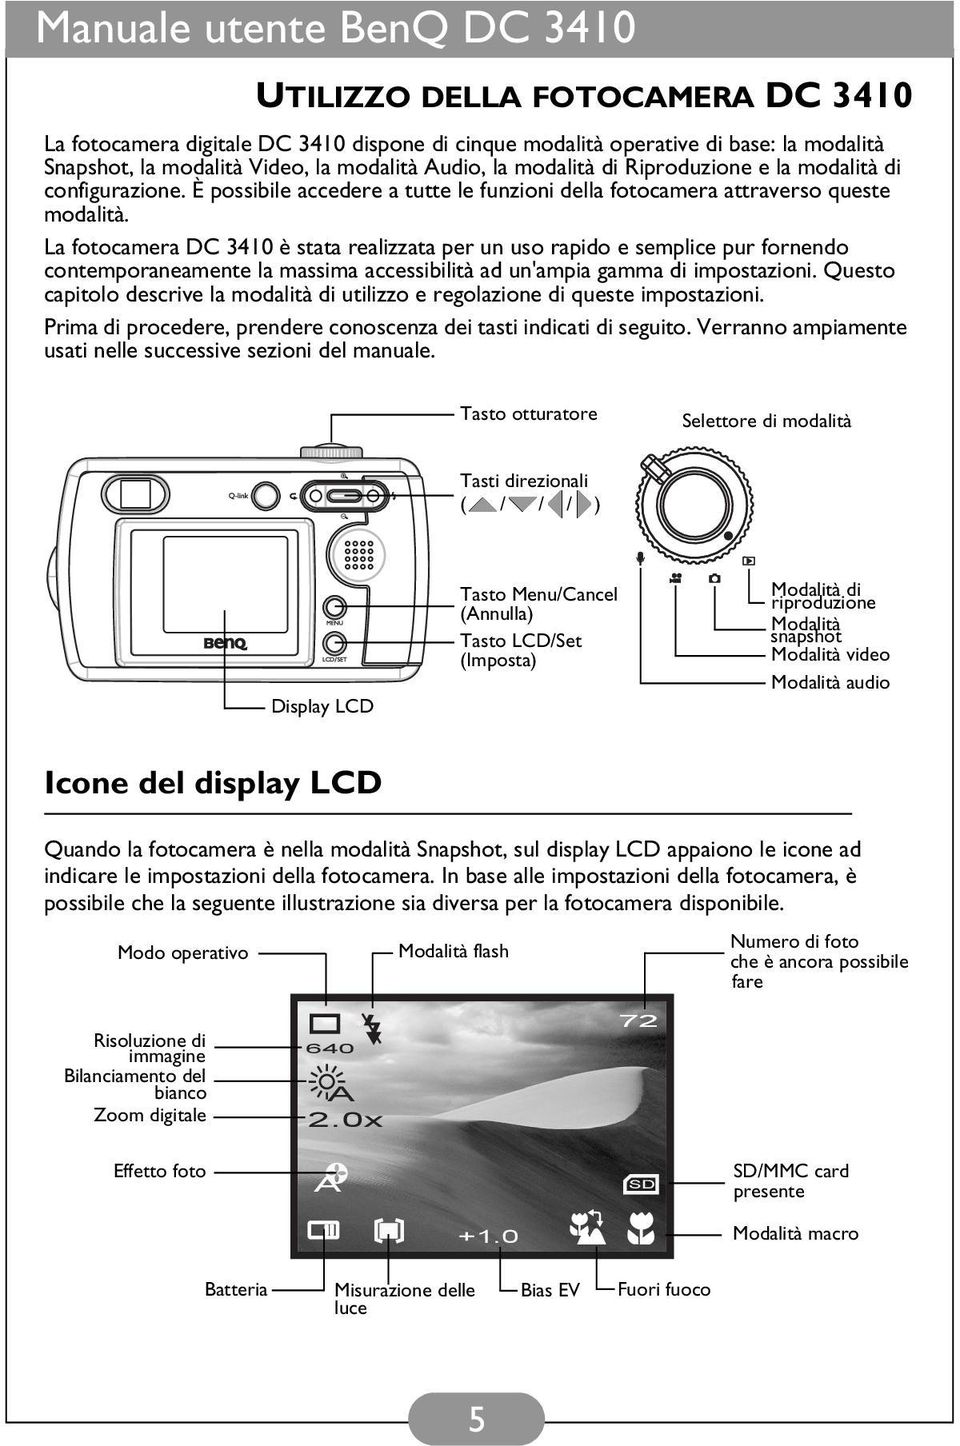 La fotocamera DC 3410 è stata realizzata per un uso rapido e semplice pur fornendo contemporaneamente la massima accessibilità ad un'ampia gamma di impostazioni.